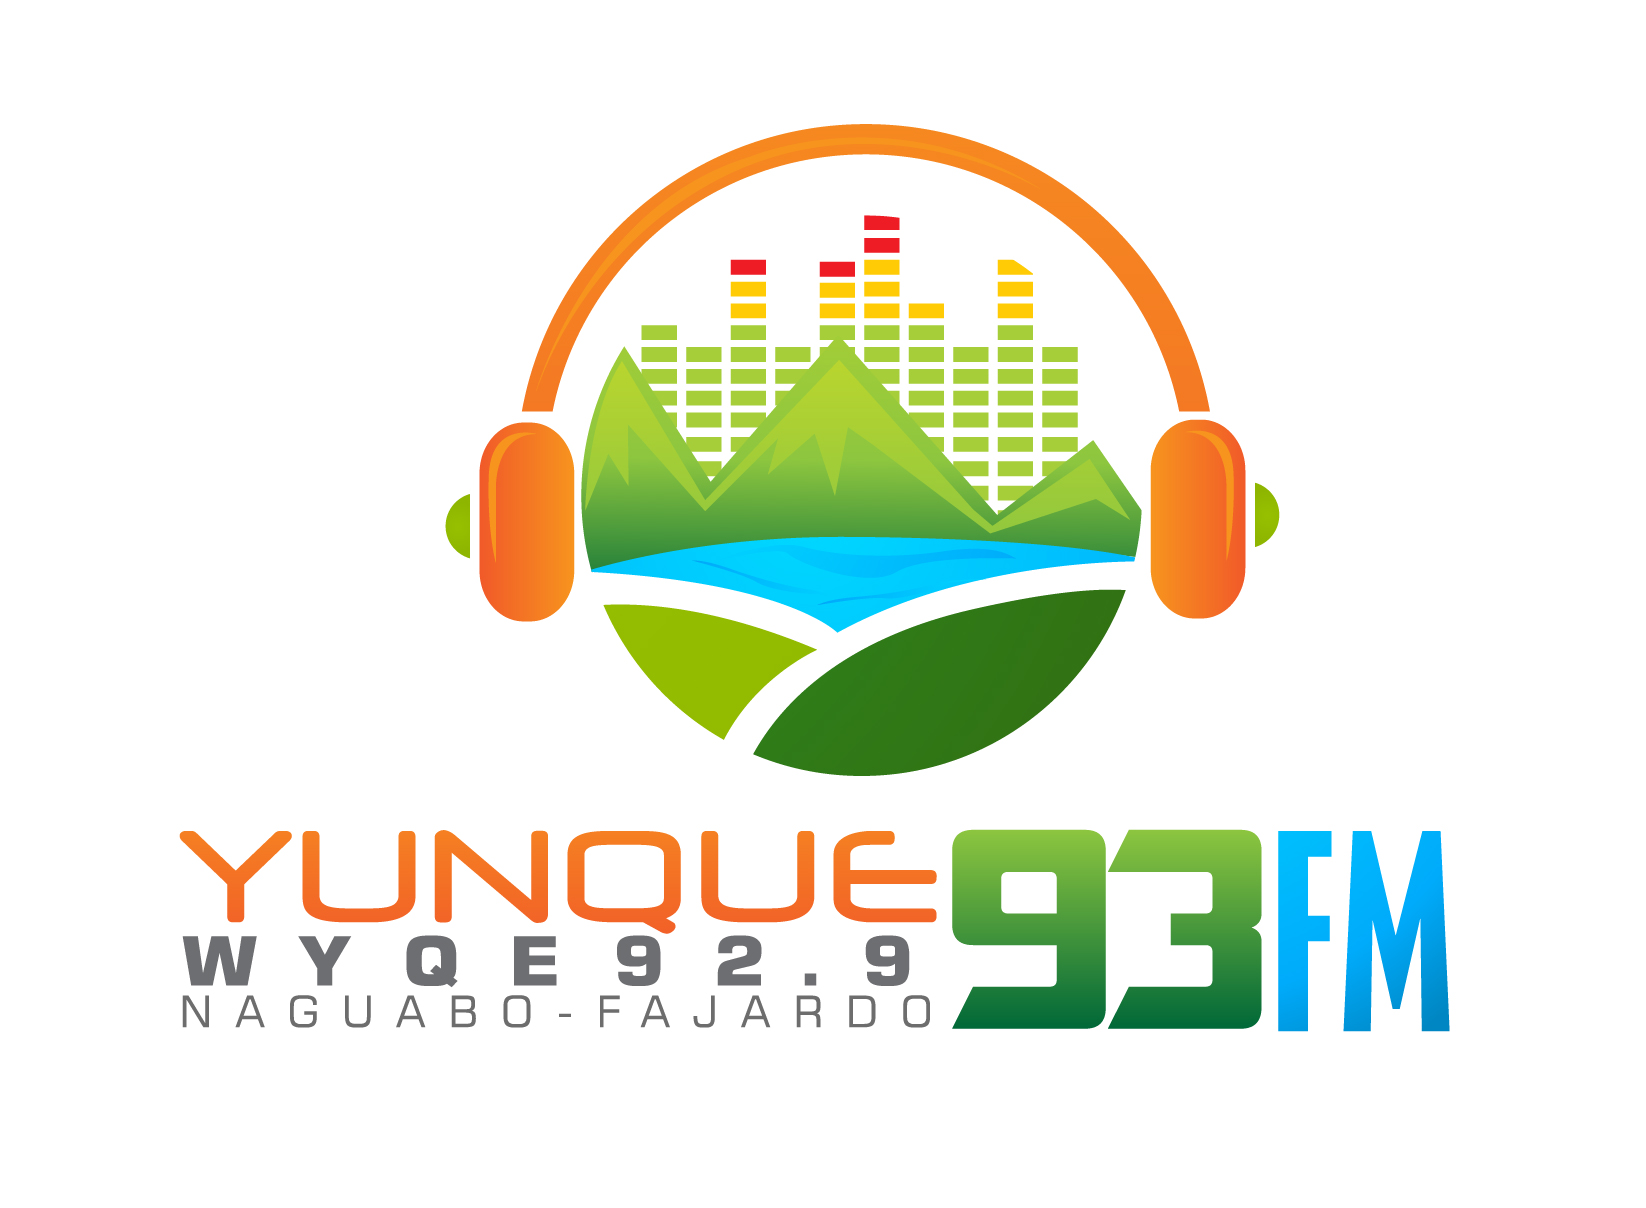 Yunque FM-01.jpg